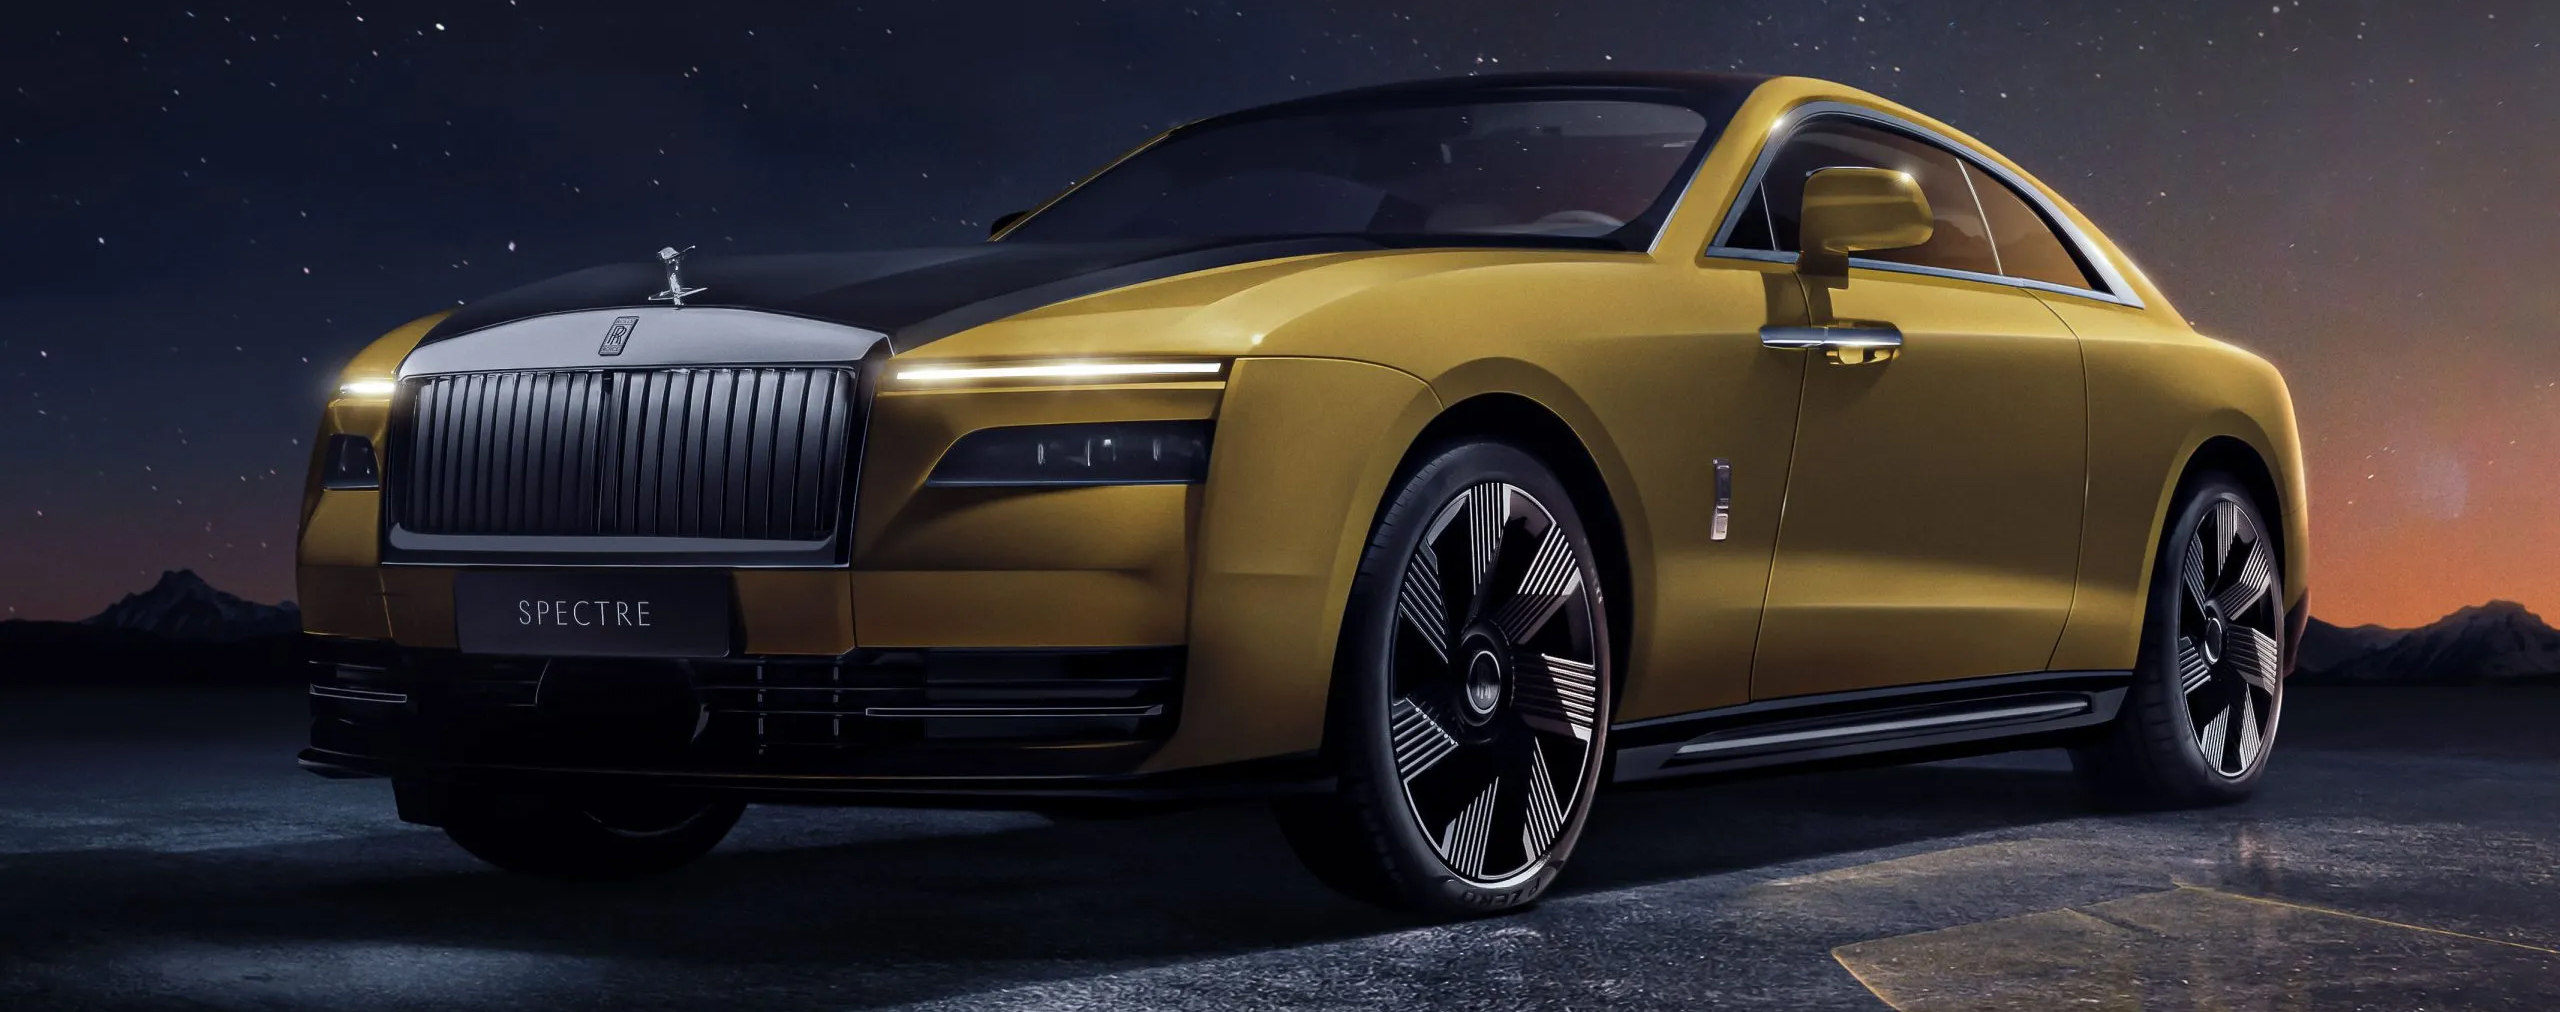 Rolls-Royce Spectre – Khi tầm nhìn về tương lai điện khí hóa hơn một thế kỷ trước đã đến hồi chín muồi